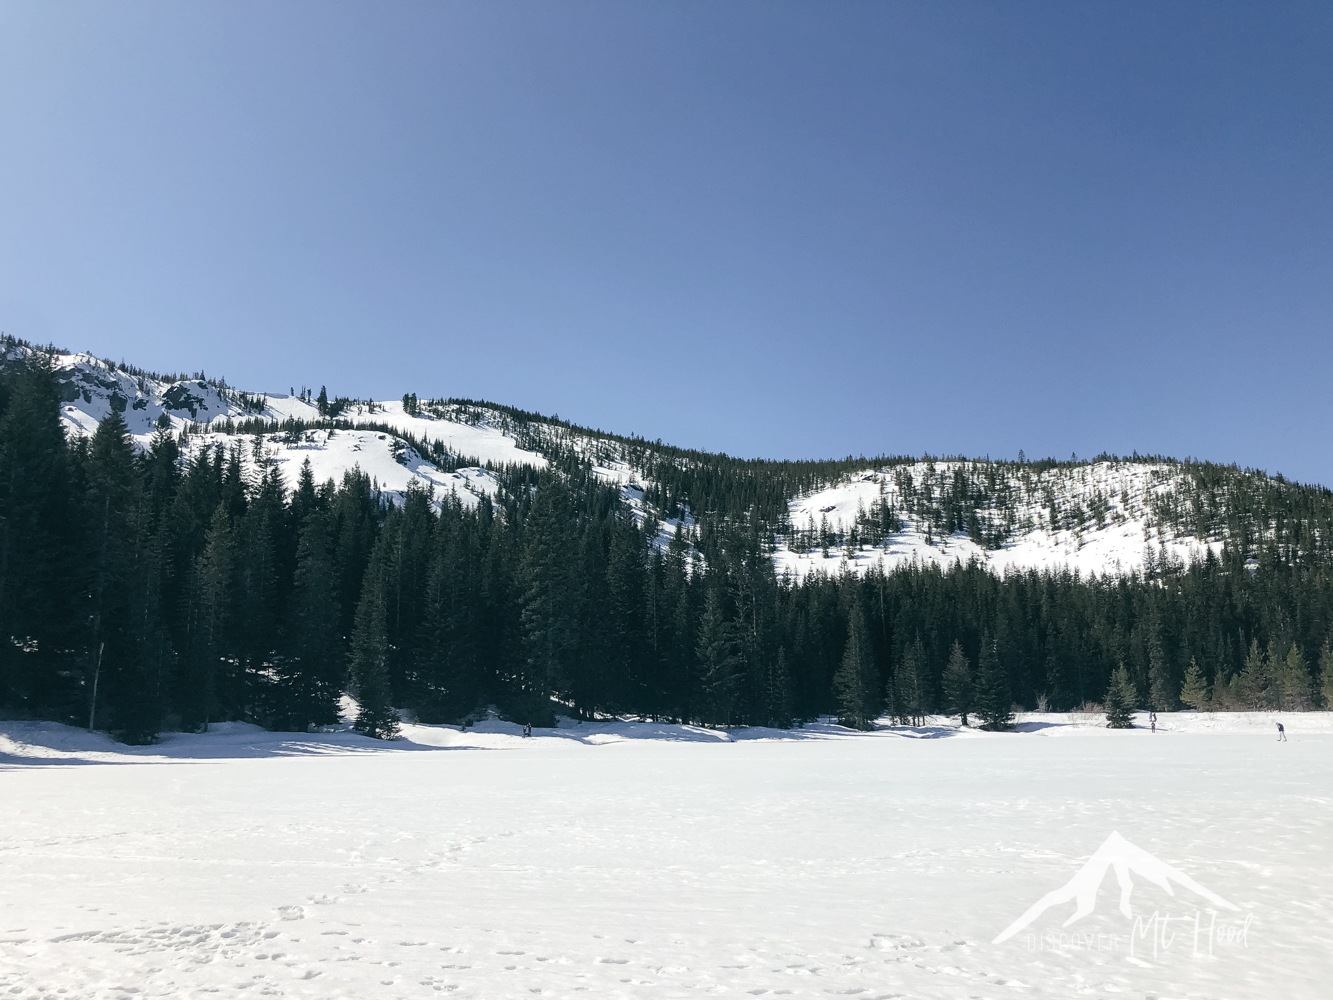 Snowy hills around mirror lake